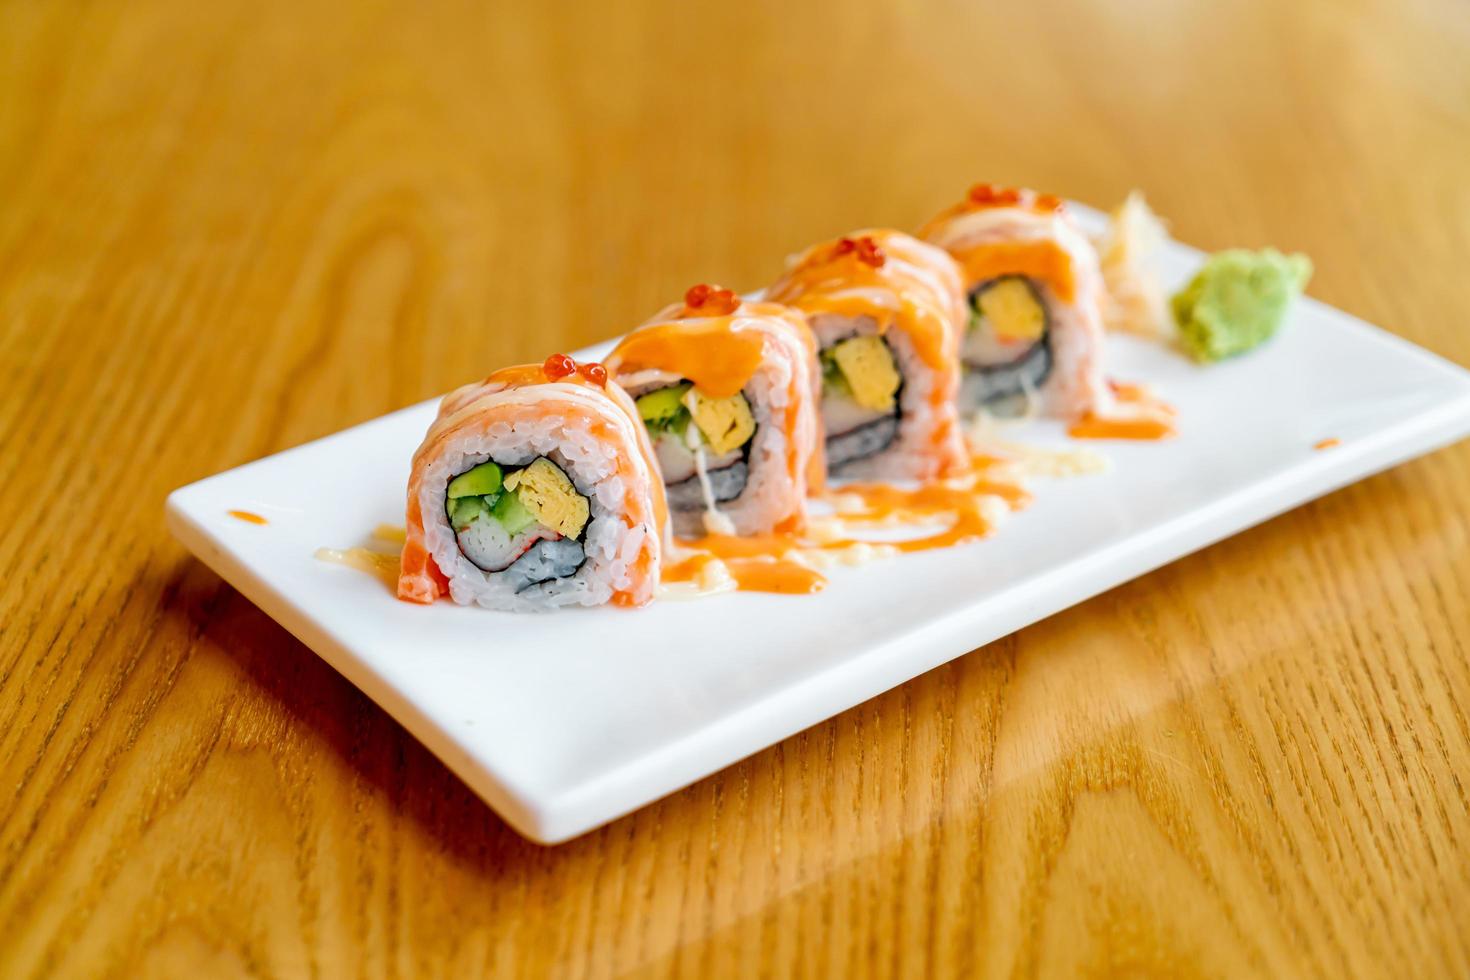 sushi roll di salmone con salsa sopra - stile cibo giapponese foto